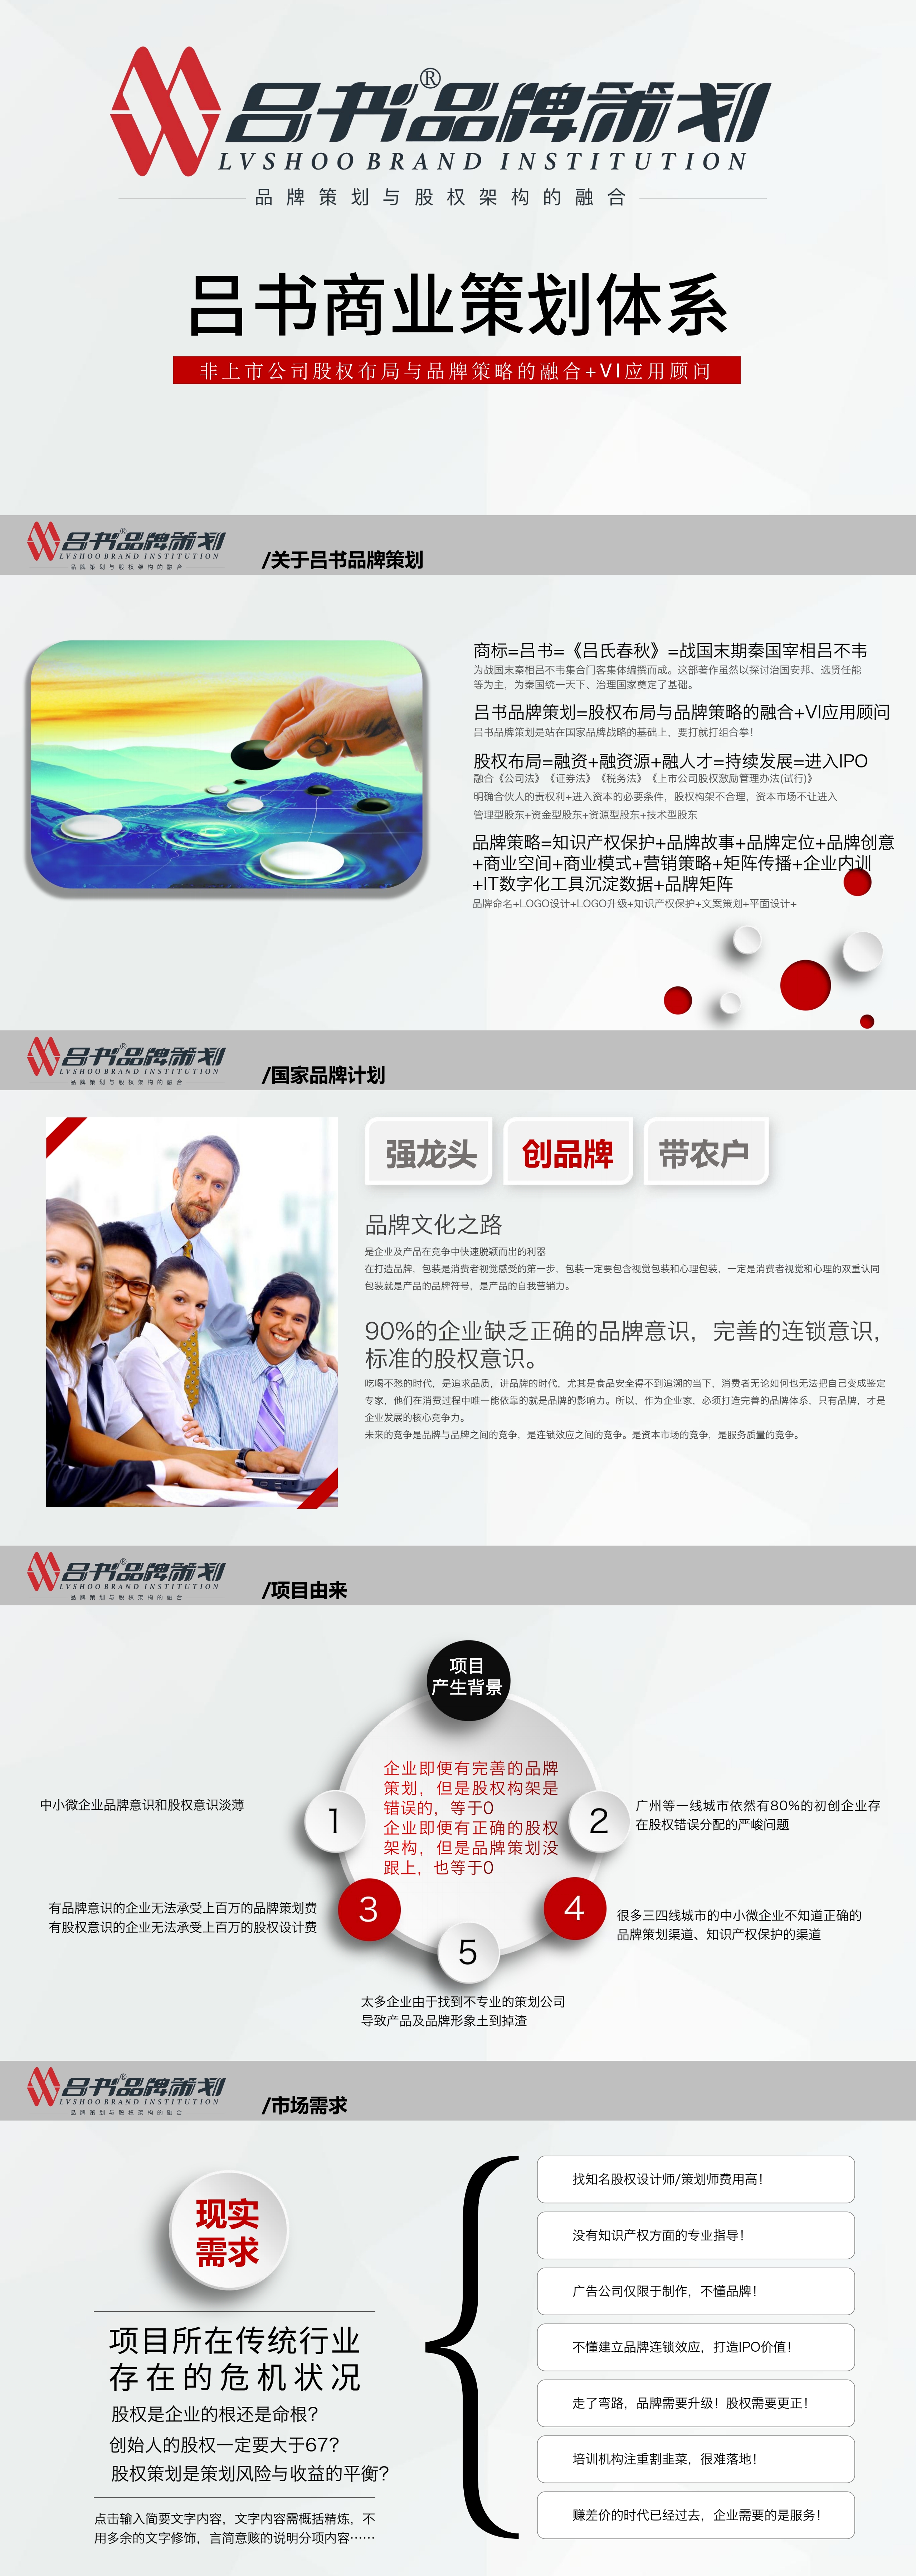 贵州品牌创意设计，策划，上海品牌创意，吕书电话17885061123「吕书品牌策划」